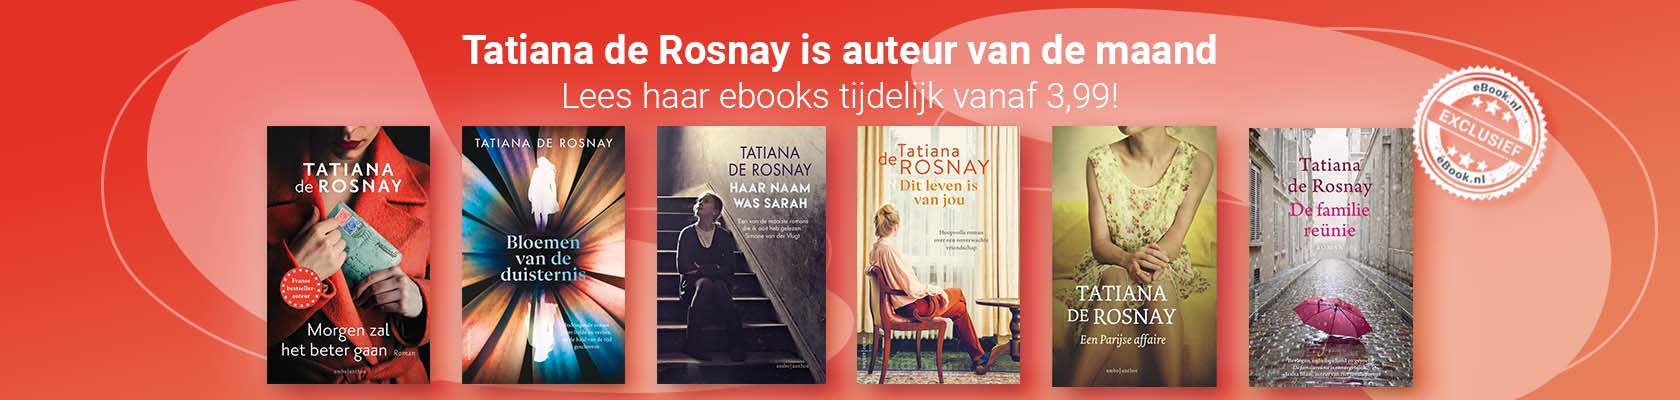 Auteur van de maand: Tatiana de Rosnay